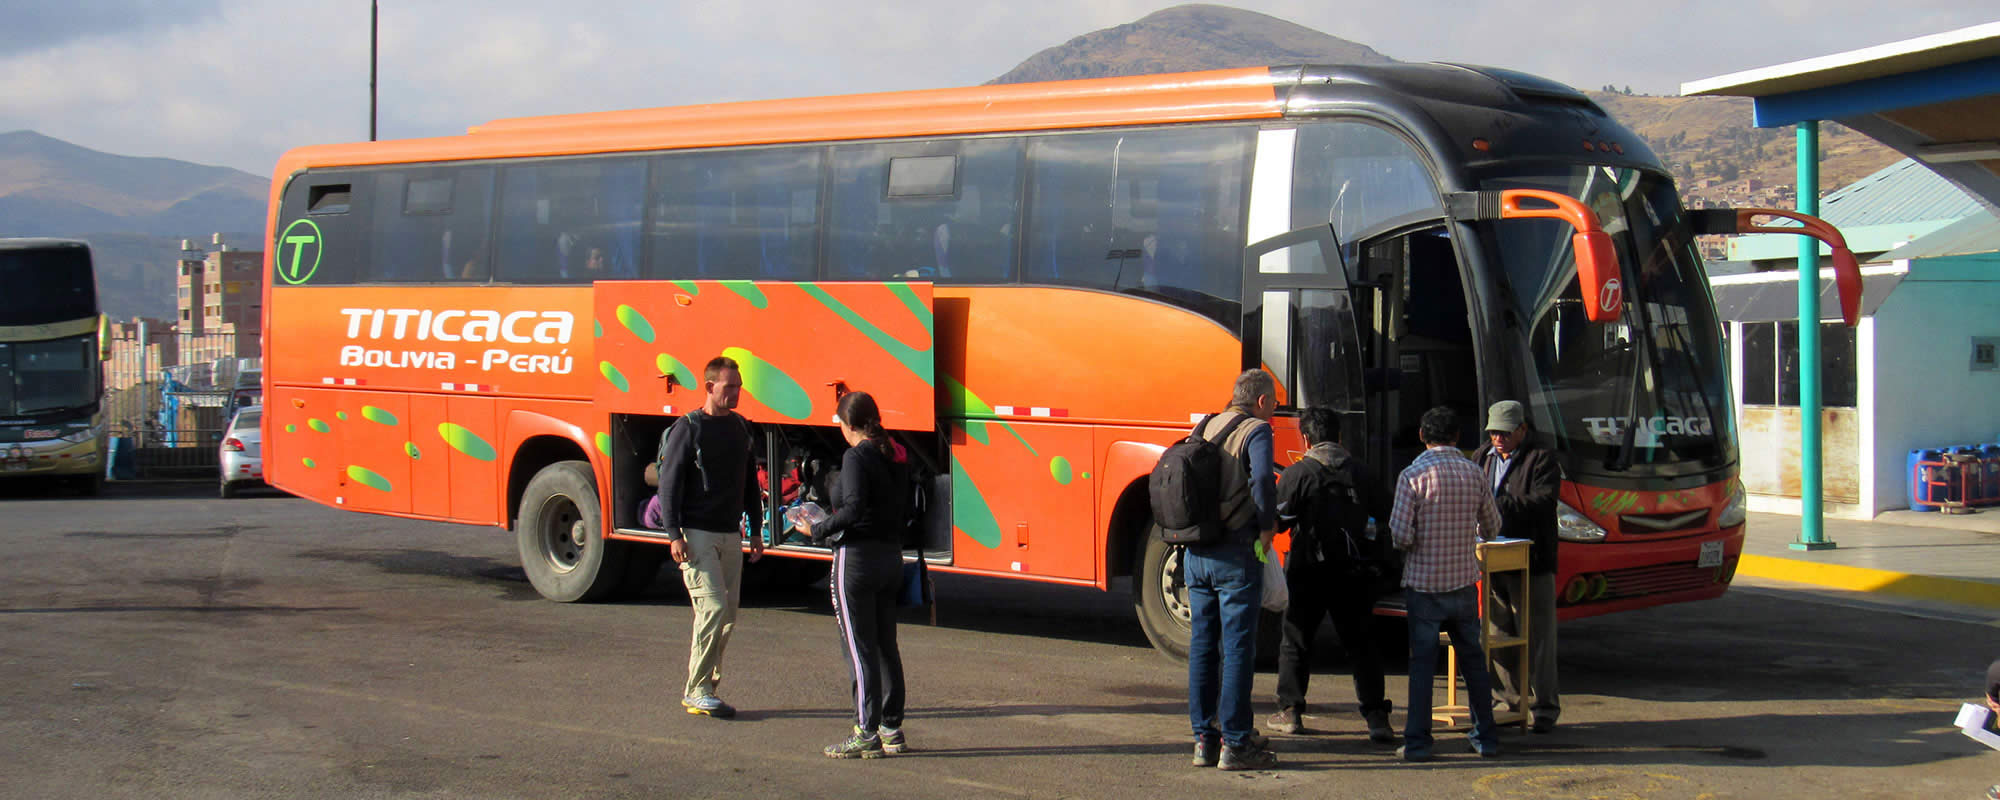 Titicaca bus Puno Copacabana